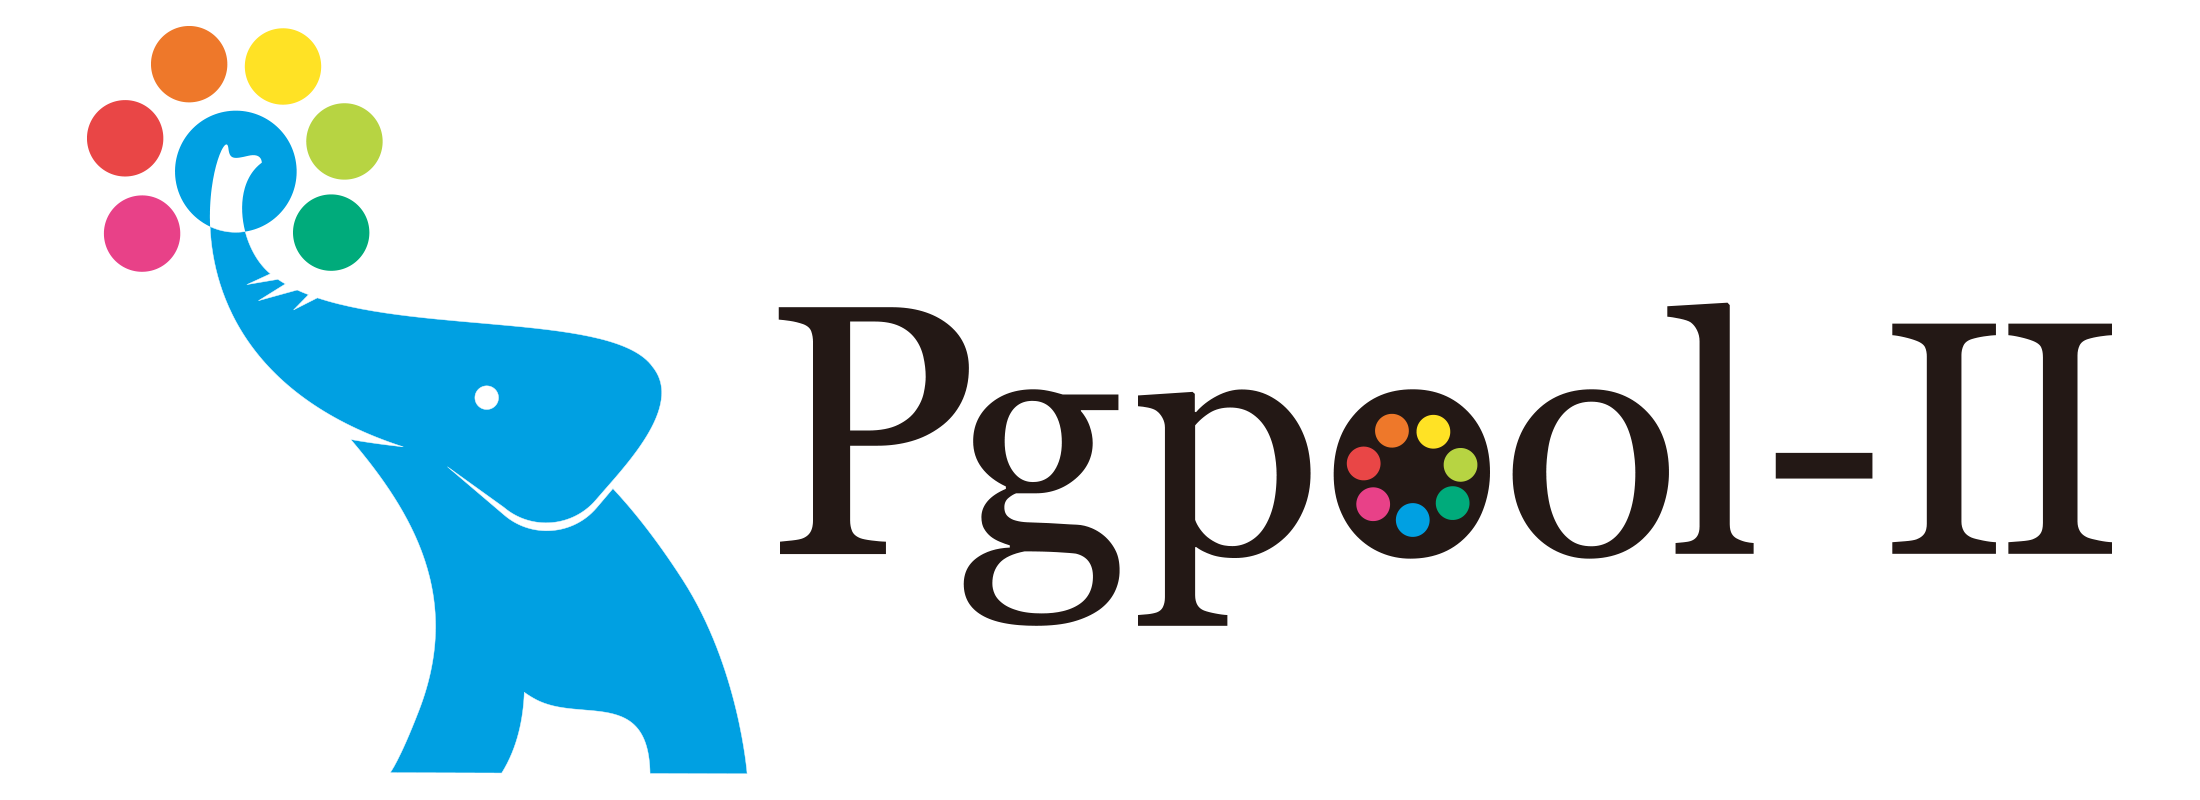 pgpool-II logo horizontal 2200x800.png